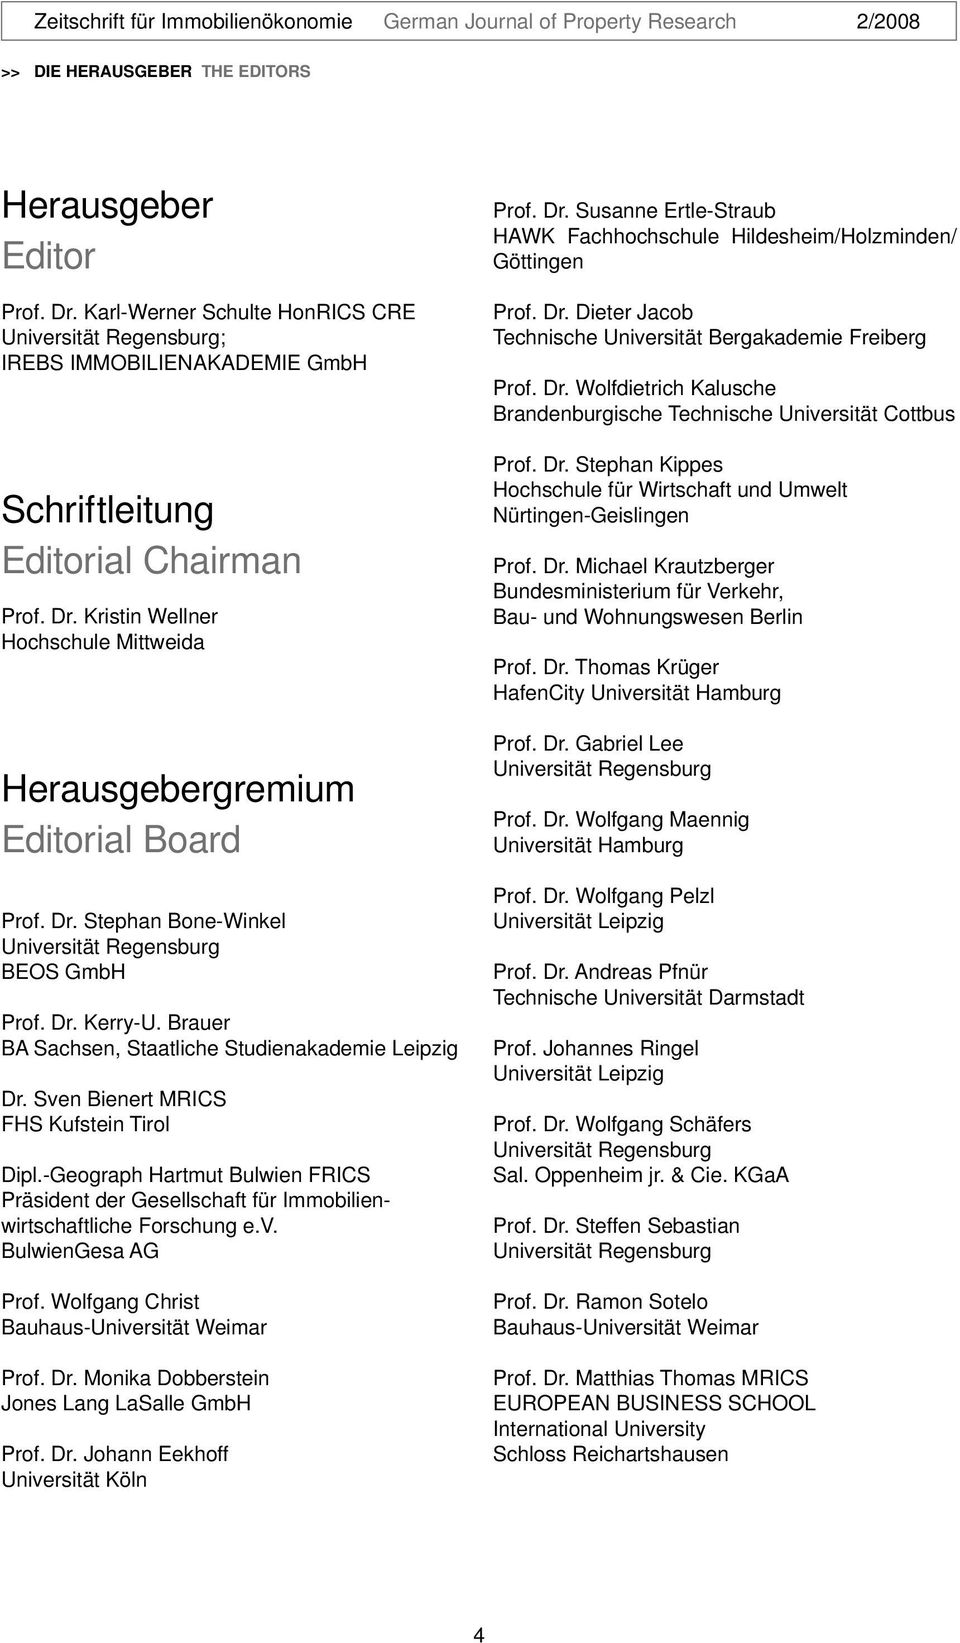 -Geograph Hartmut Bulwien FRICS Präsident der Gesellschaft für Immobilienwirtschaftliche Forschung e.v. BulwienGesa AG Prof. Wolfgang Christ Bauhaus-Universität Weimar Prof. Dr.